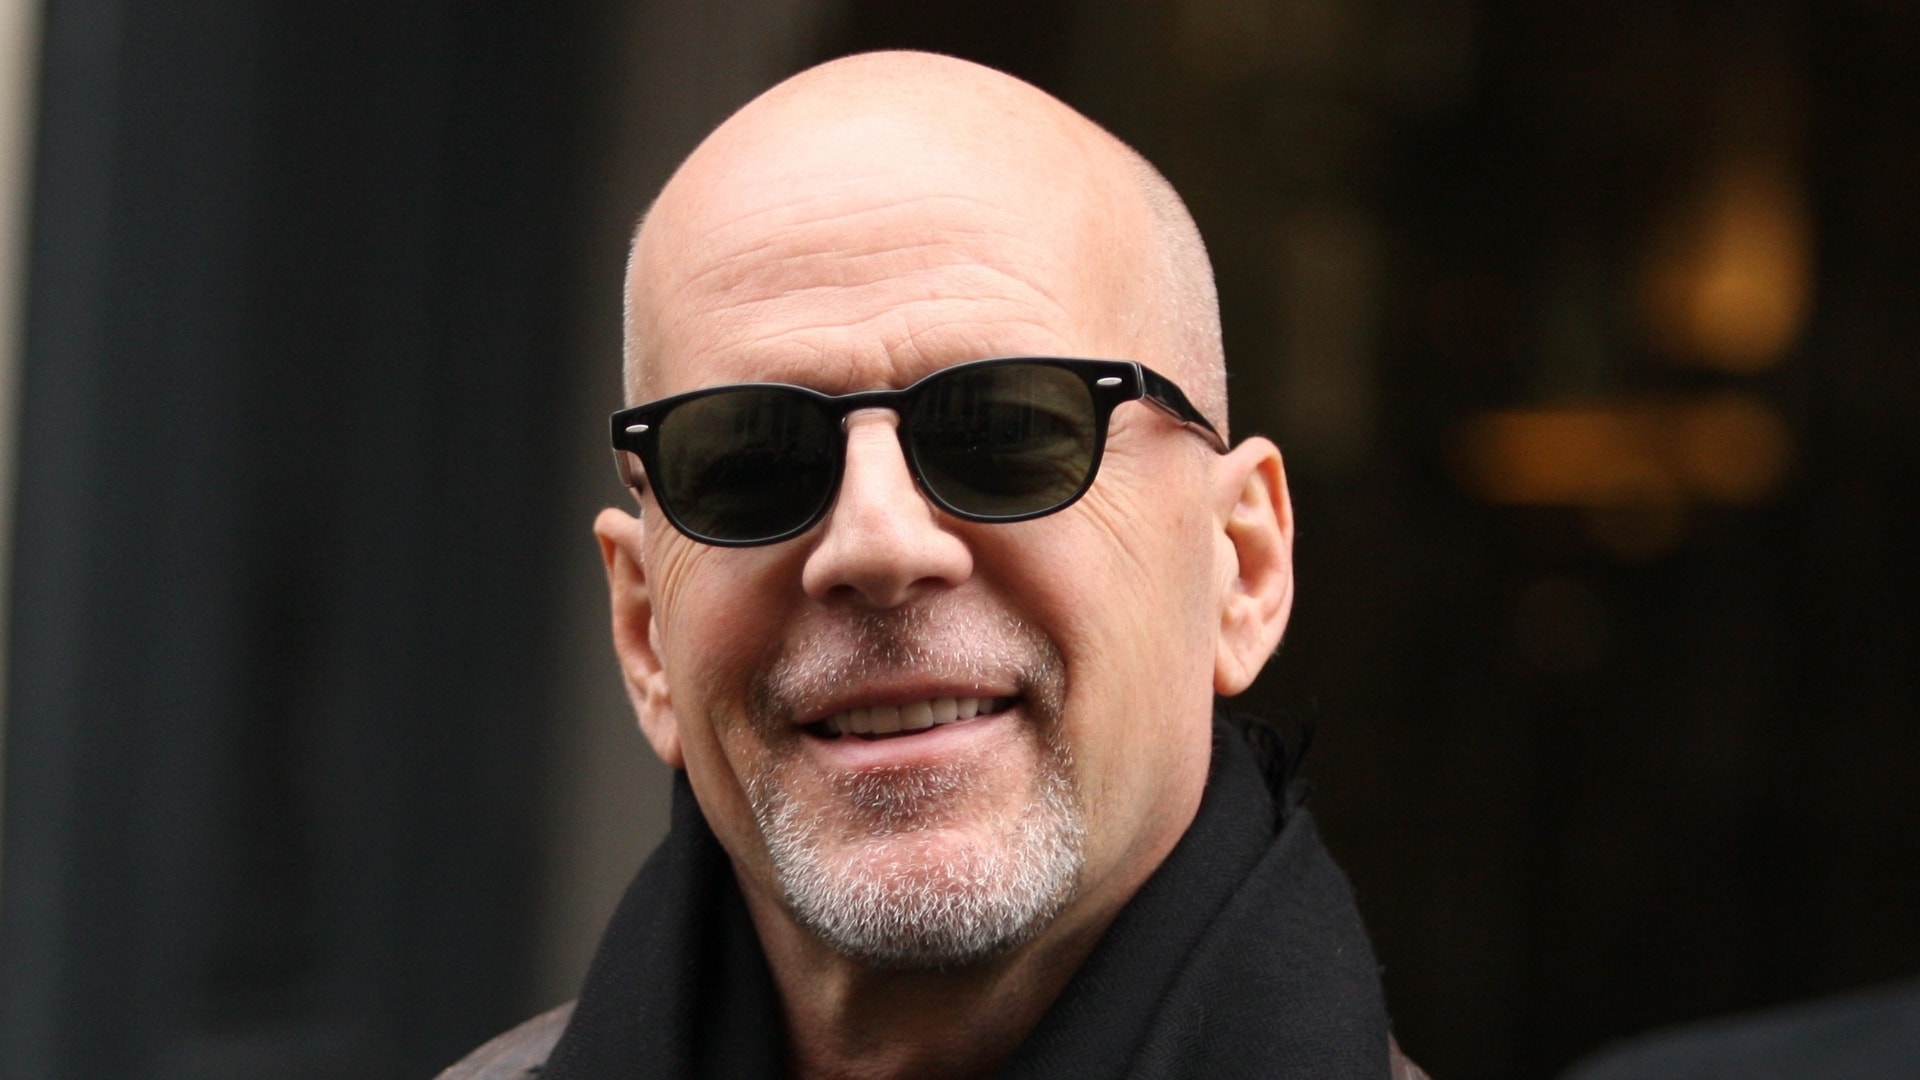 Mr. Bruce Willis